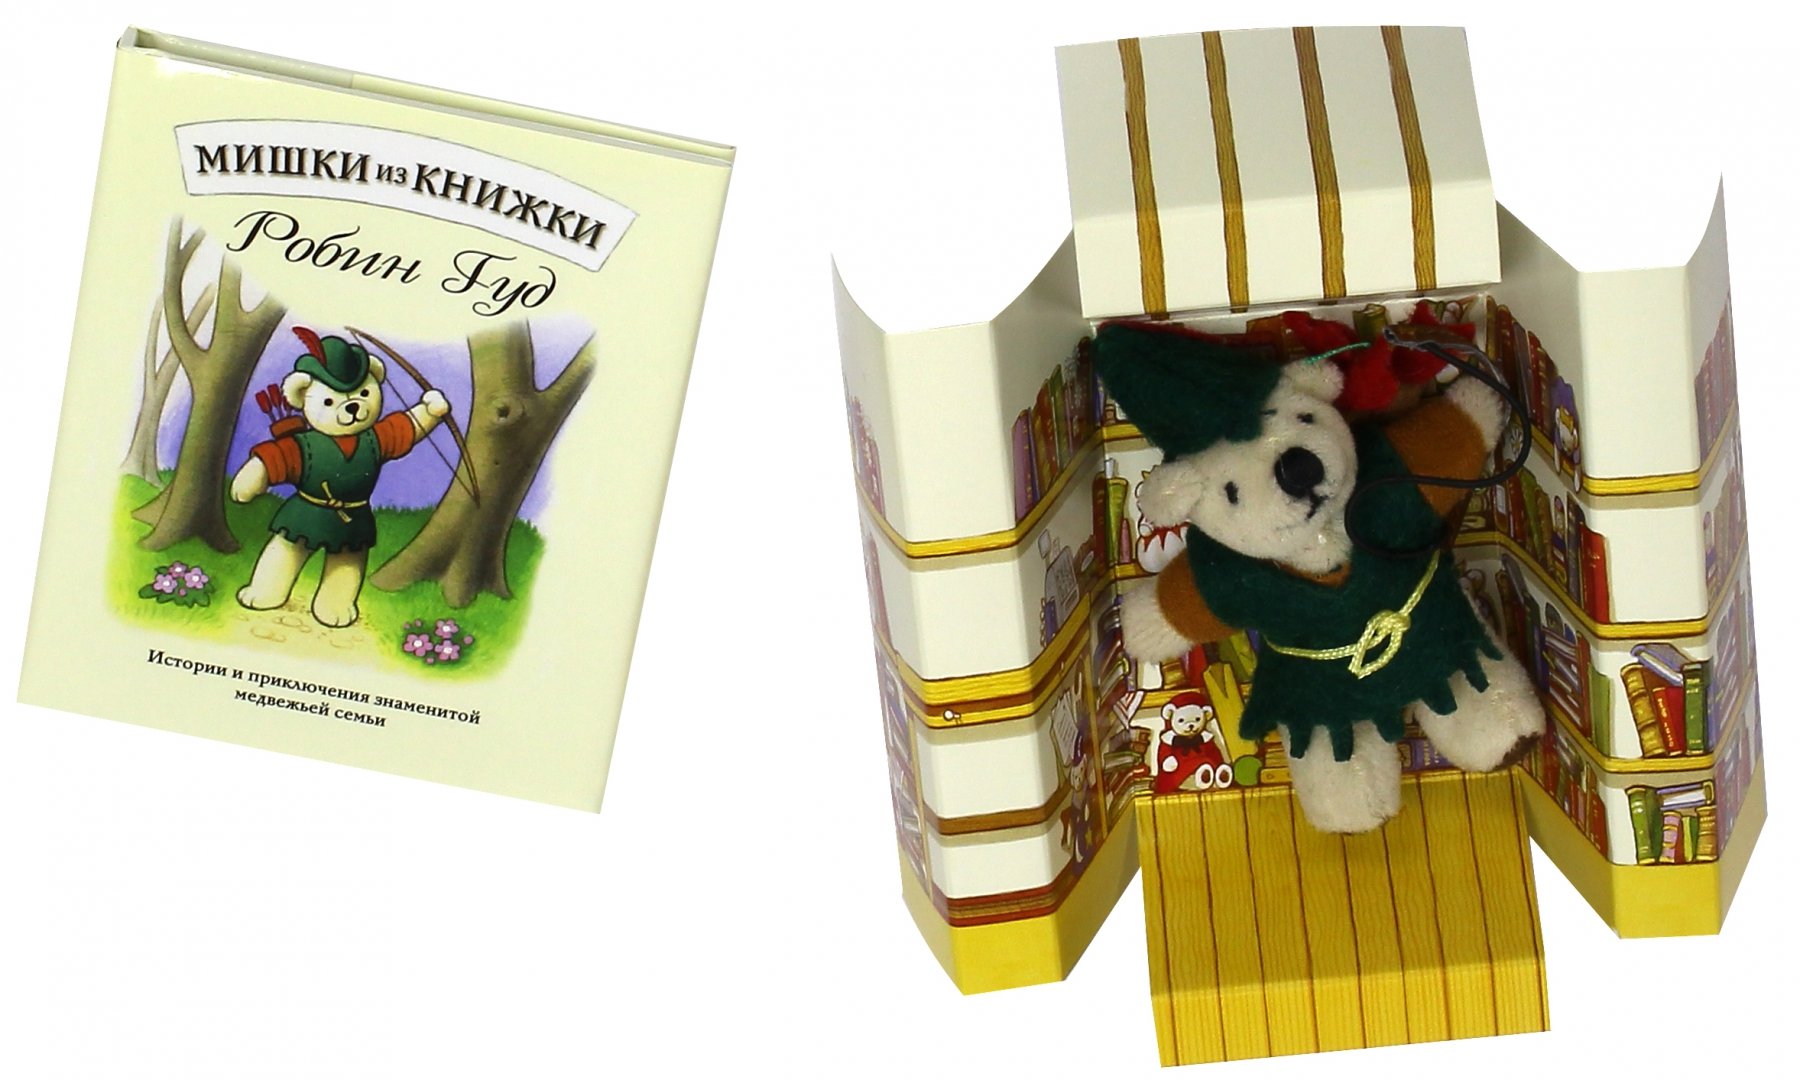 Иллюстрация 1 из 12 для Робин Гуд. Книга + игрушечный медведь | Лабиринт - книги. Источник: Лабиринт